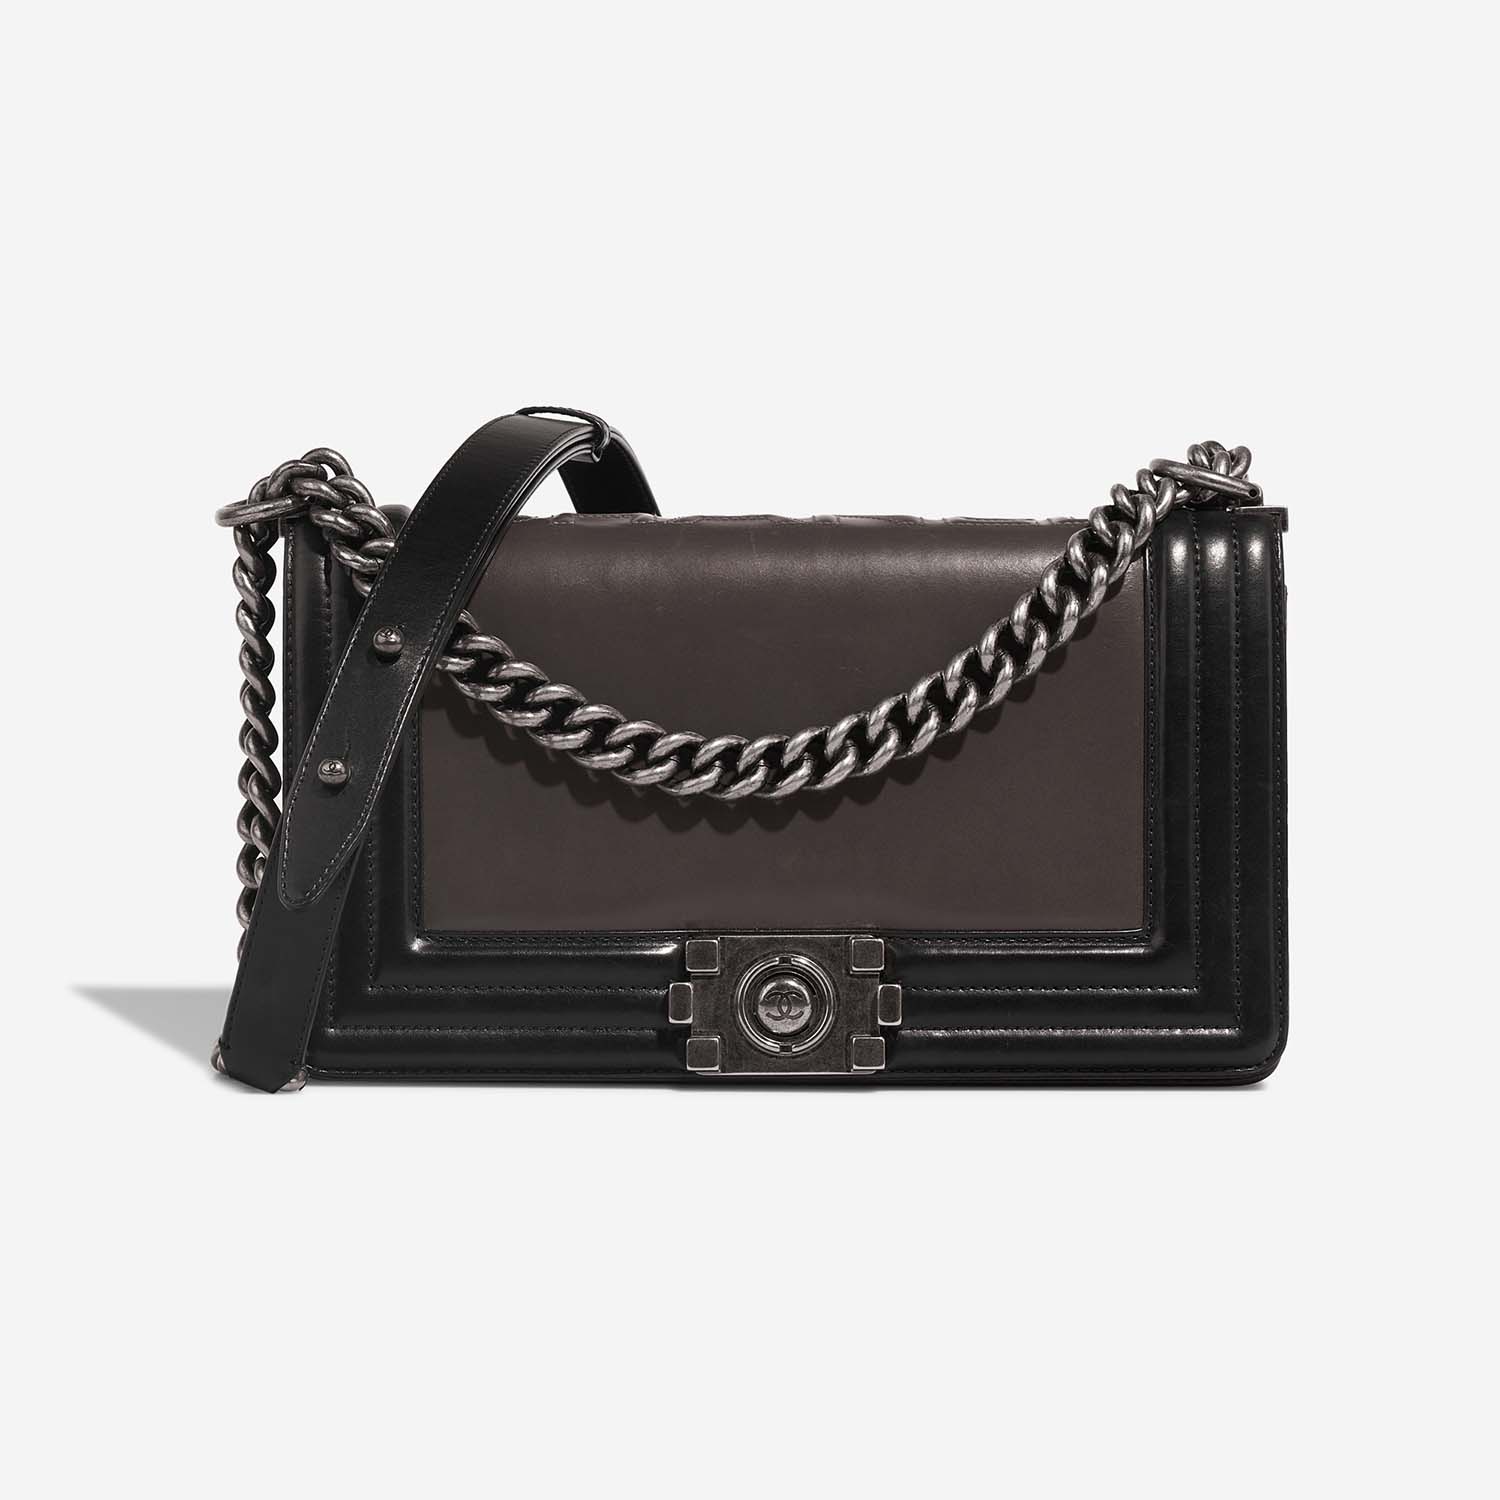 Chanel Boy OldMedium Schwarz-Grau Front S | Verkaufen Sie Ihre Designer-Tasche auf Saclab.com